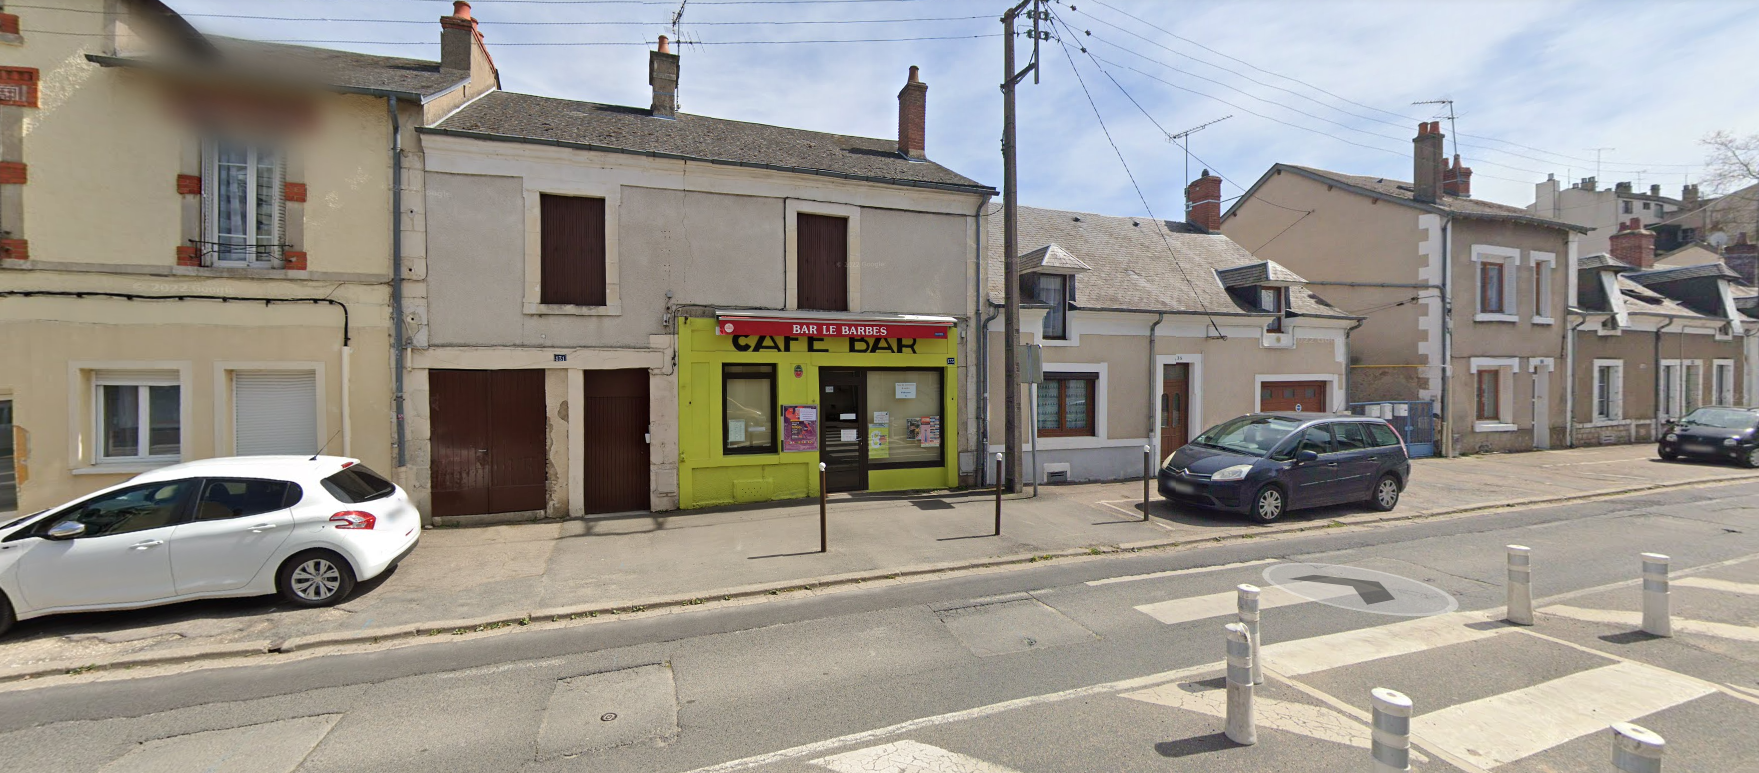 A vendre fond de commerce, Bar de quartier proche des festivités (Printemps de Bourges) avec terrasse, possibilité de développer petite restauration.
petit loyer comprenant un studio. Stationnement Gratuit.